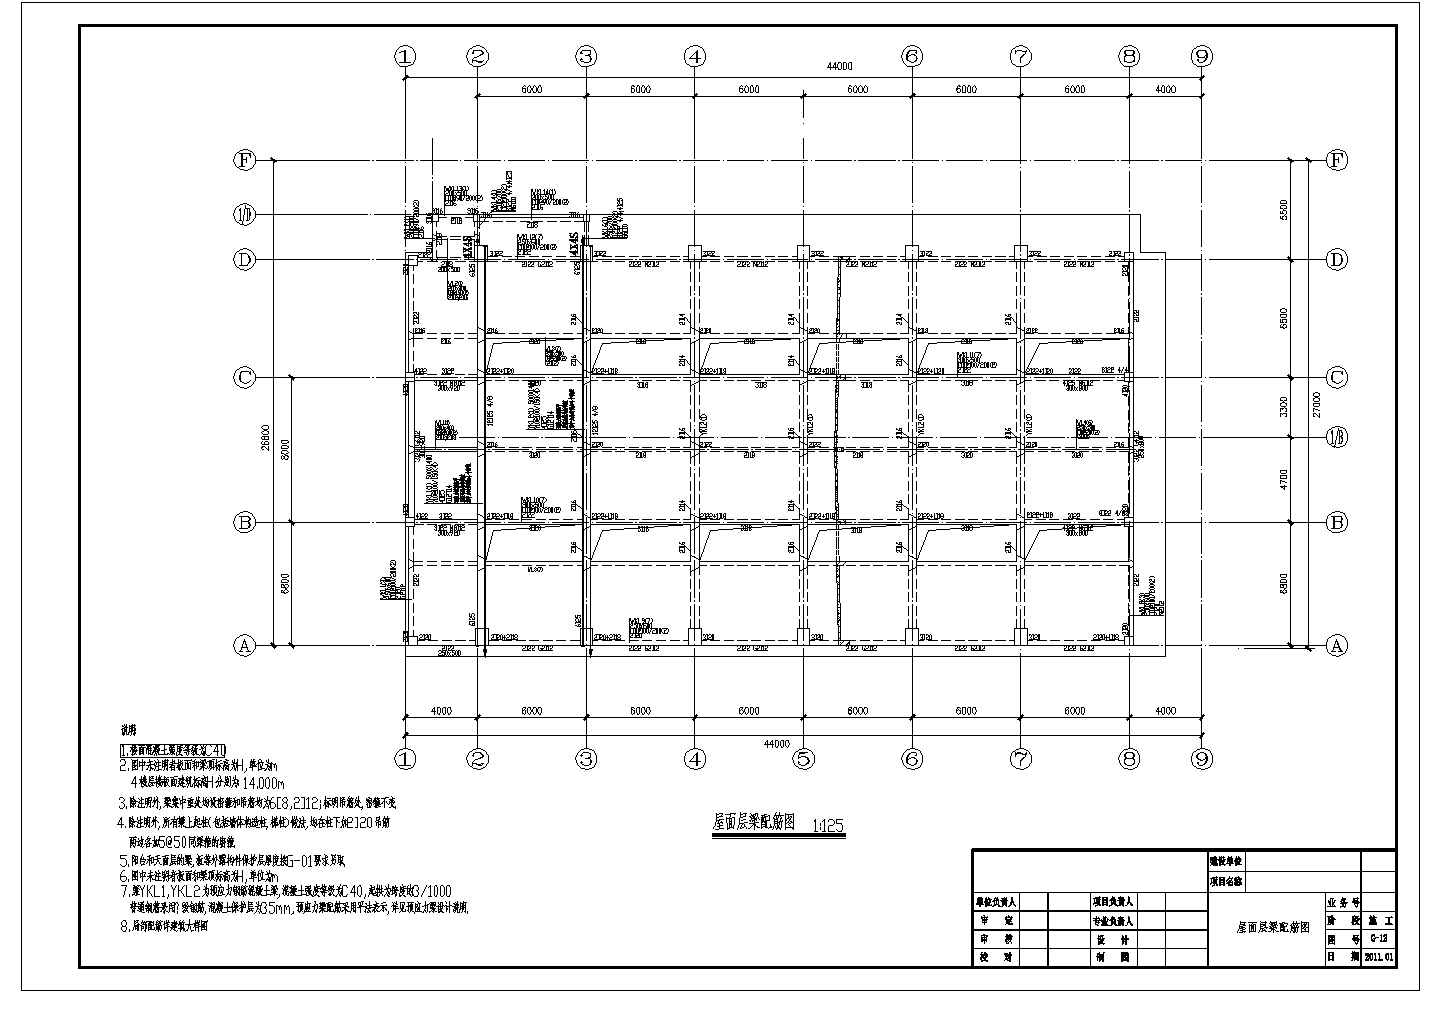 某二层综合楼预应力梁体育馆梁混凝土结构设计图